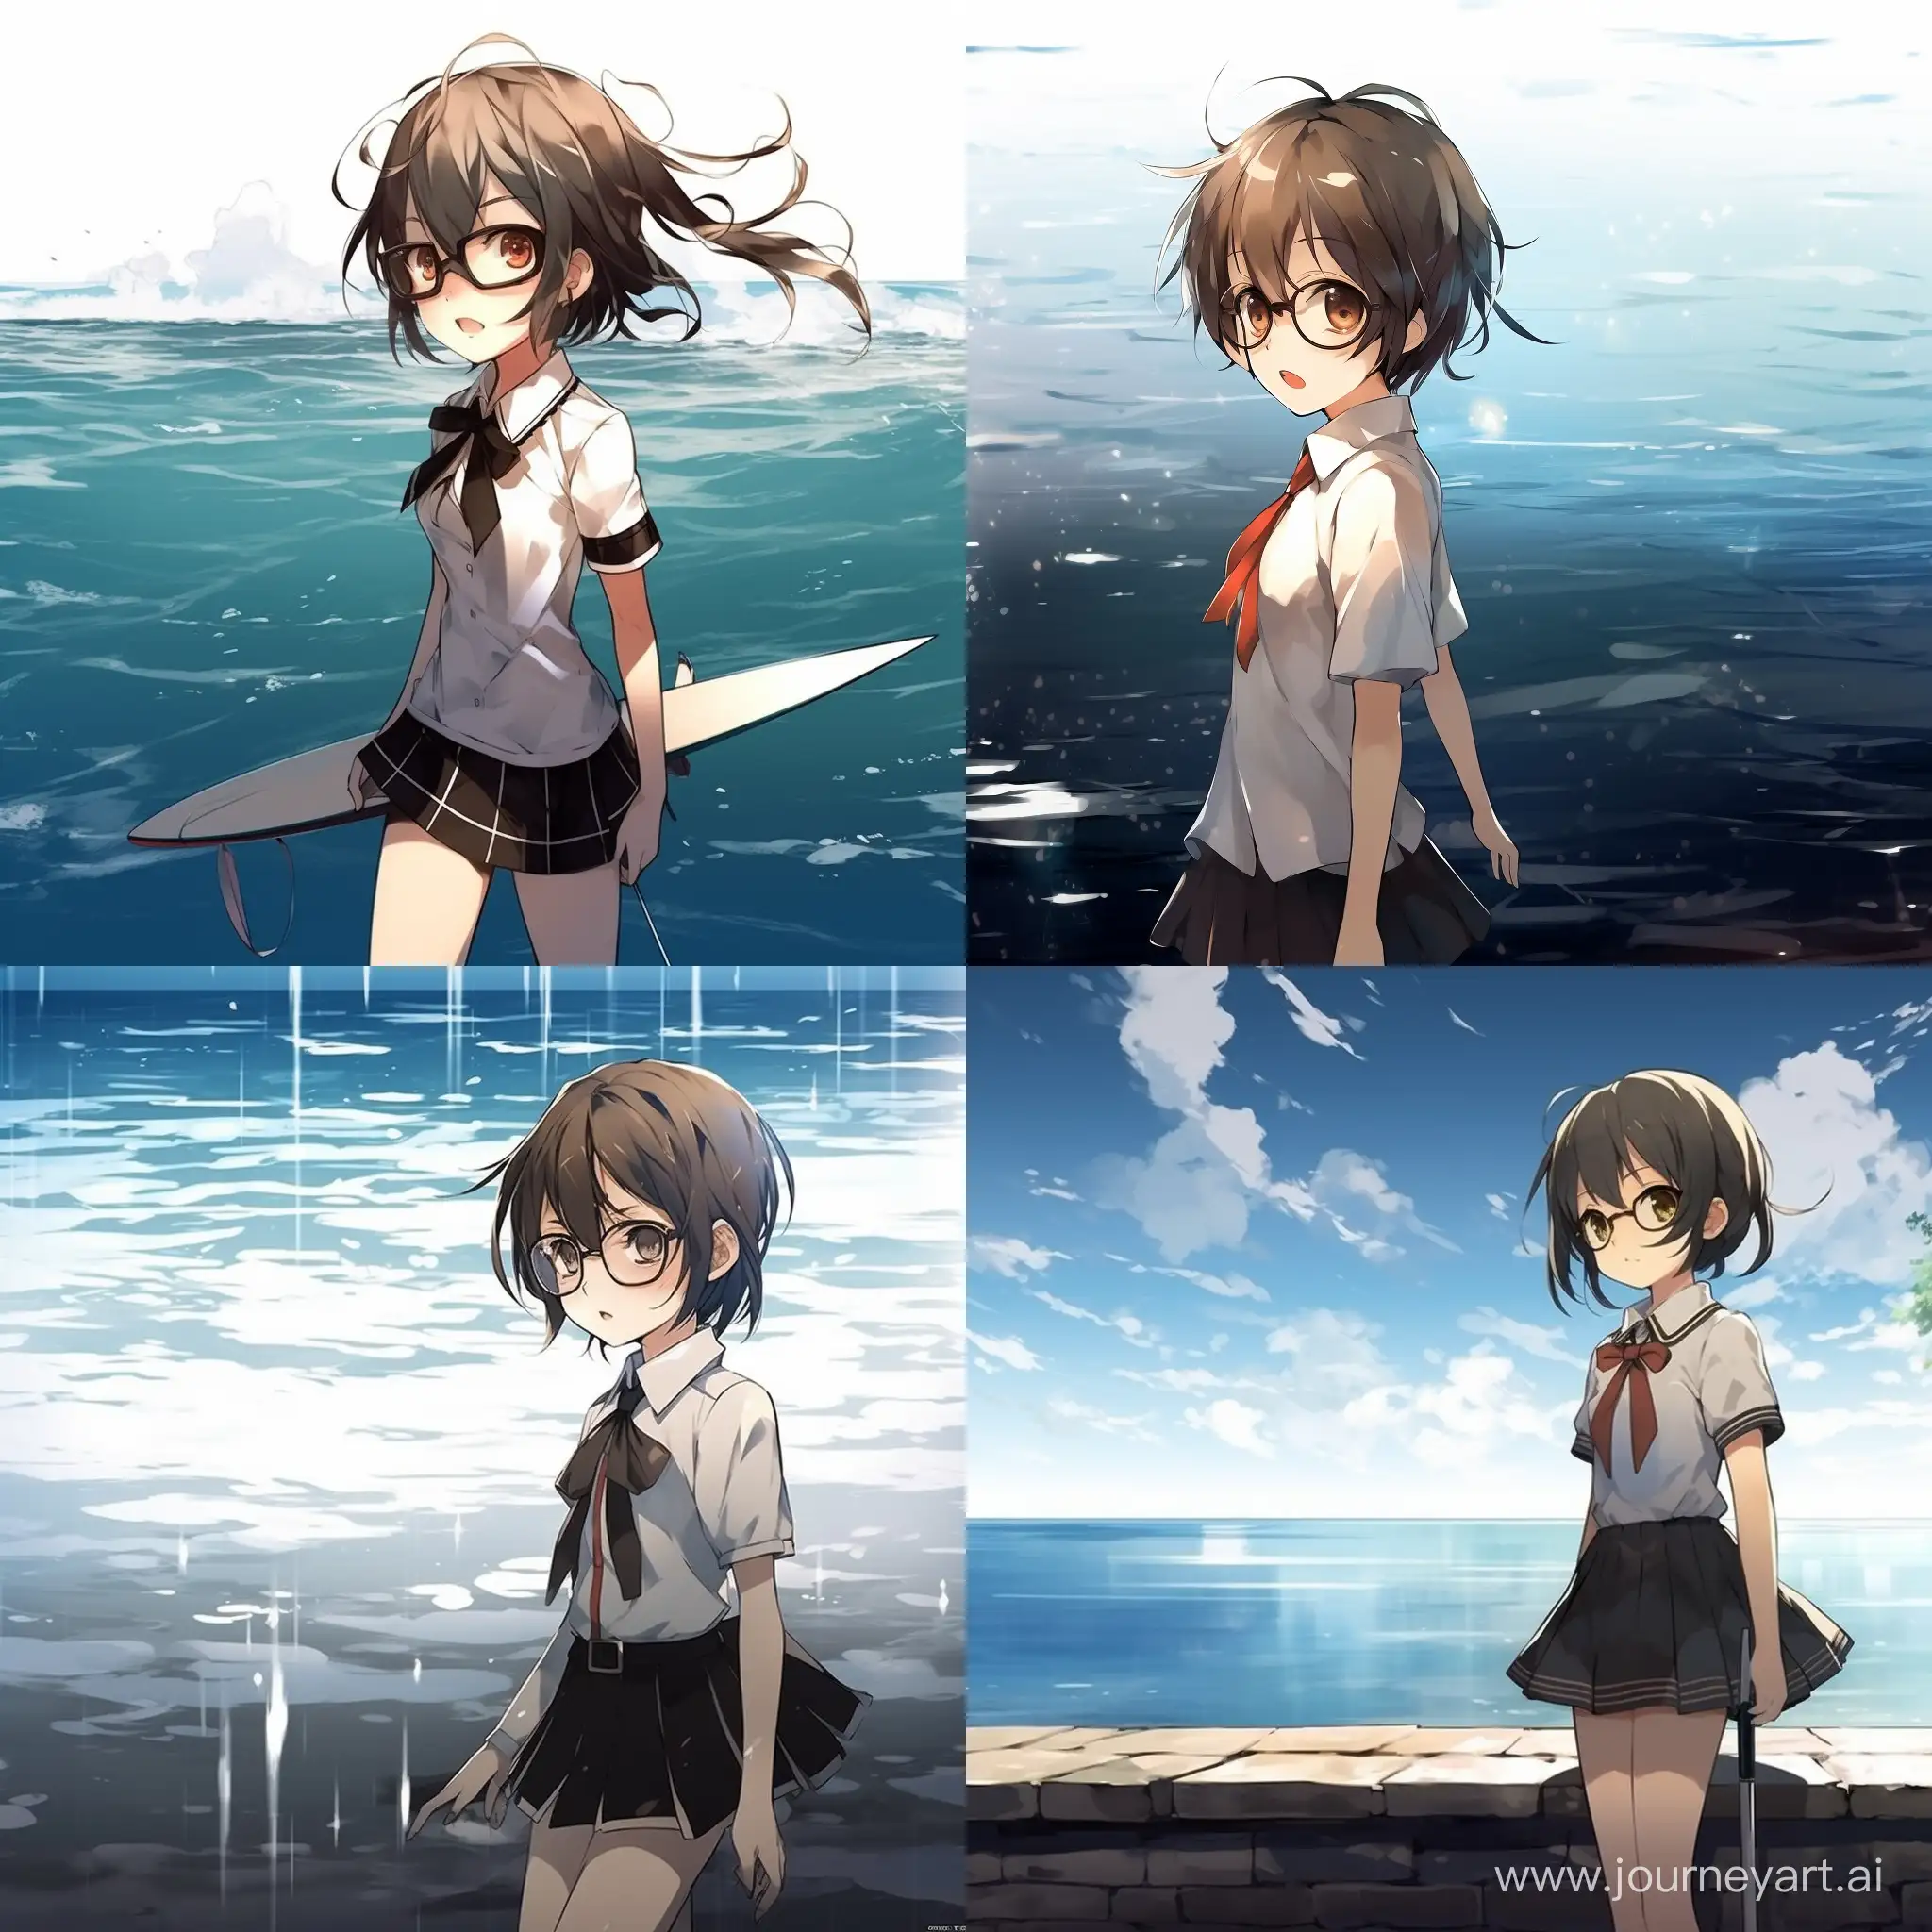 Anime girl swim near ocean with glasses 